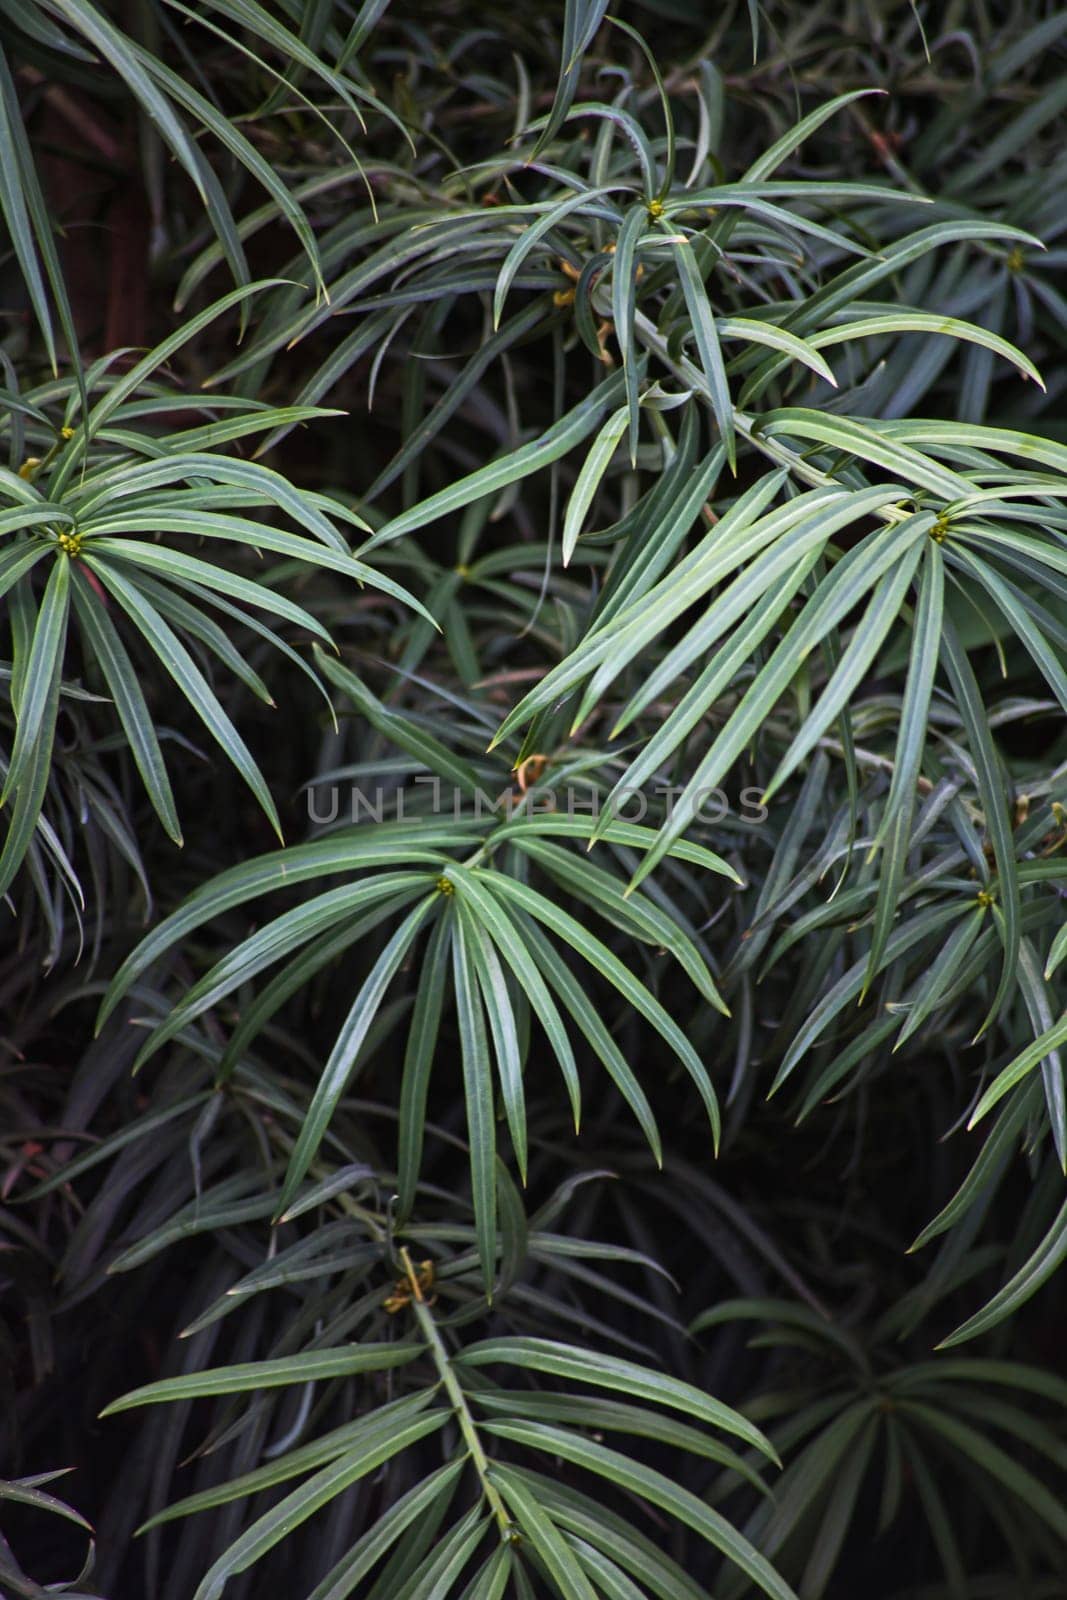 Yellowwood (Podocarpus henkeli) leaves 14701 by kobus_peche